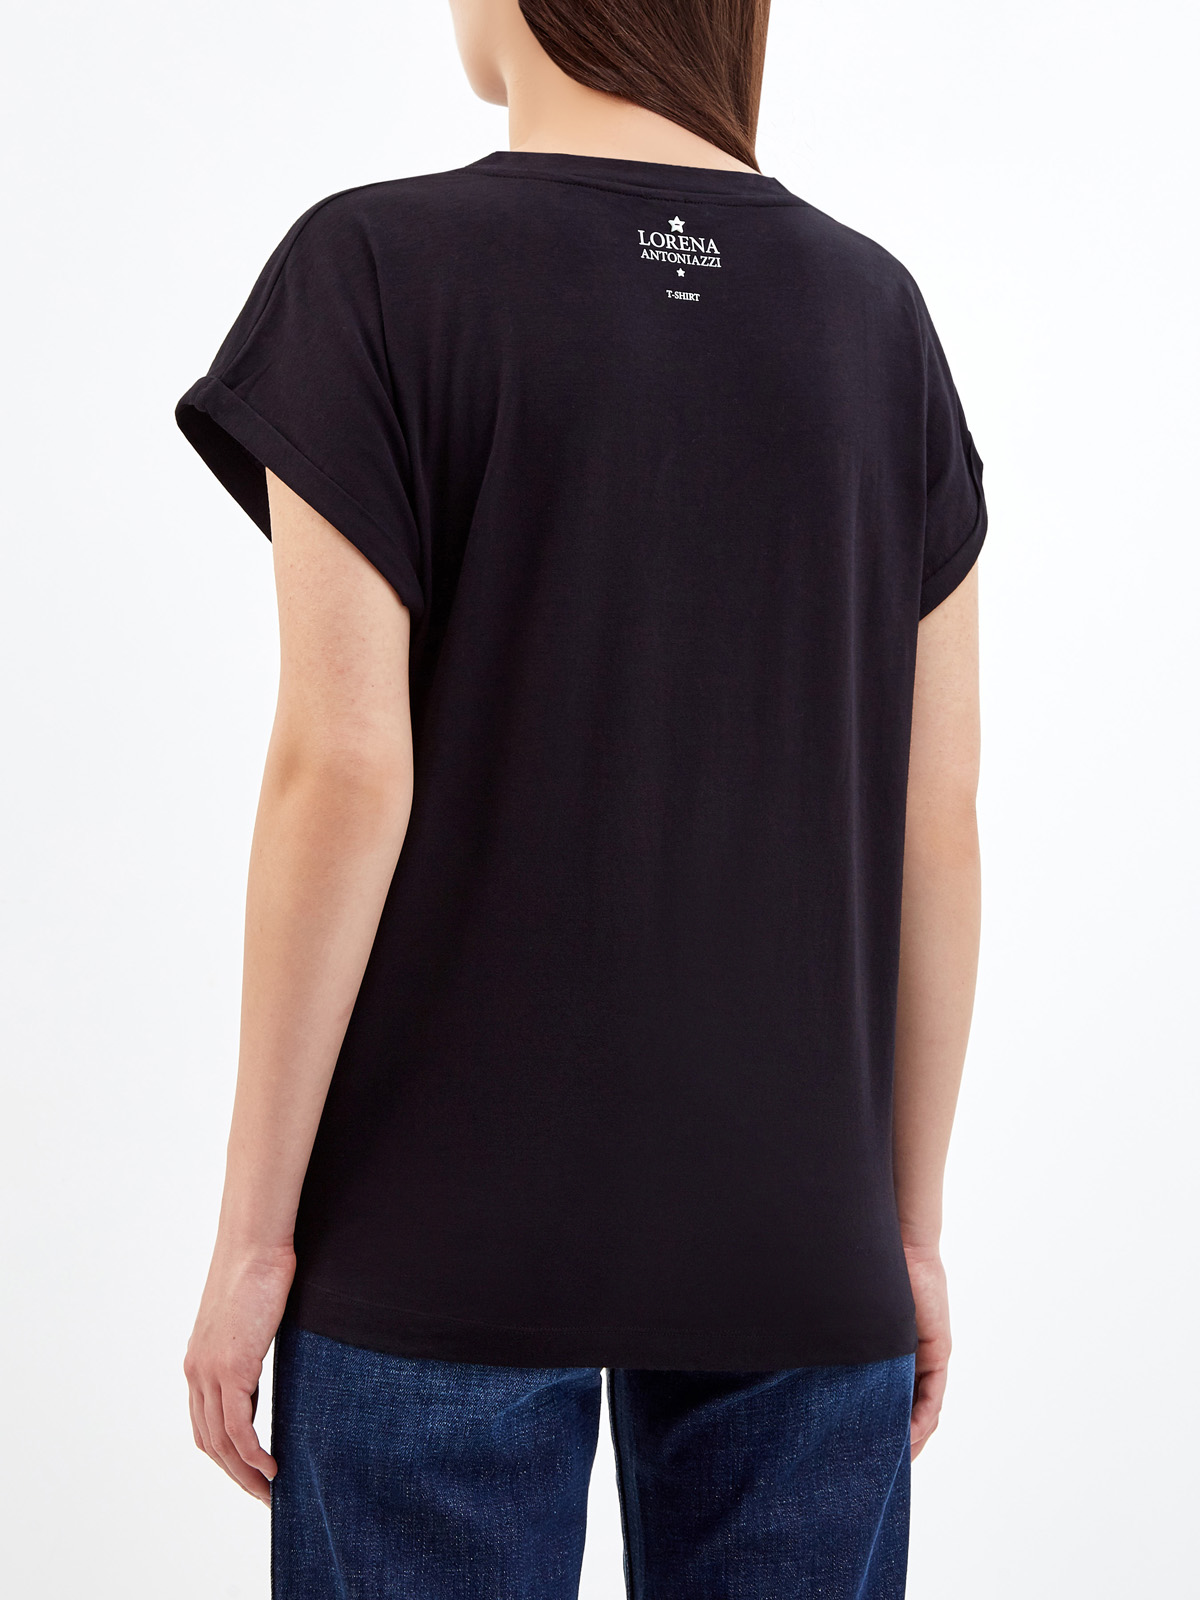 Черная футболка из хлопка джерси с символикой из кристаллов Swarovski LORENA ANTONIAZZI, цвет черный, размер 40;42;44;46 - фото 4